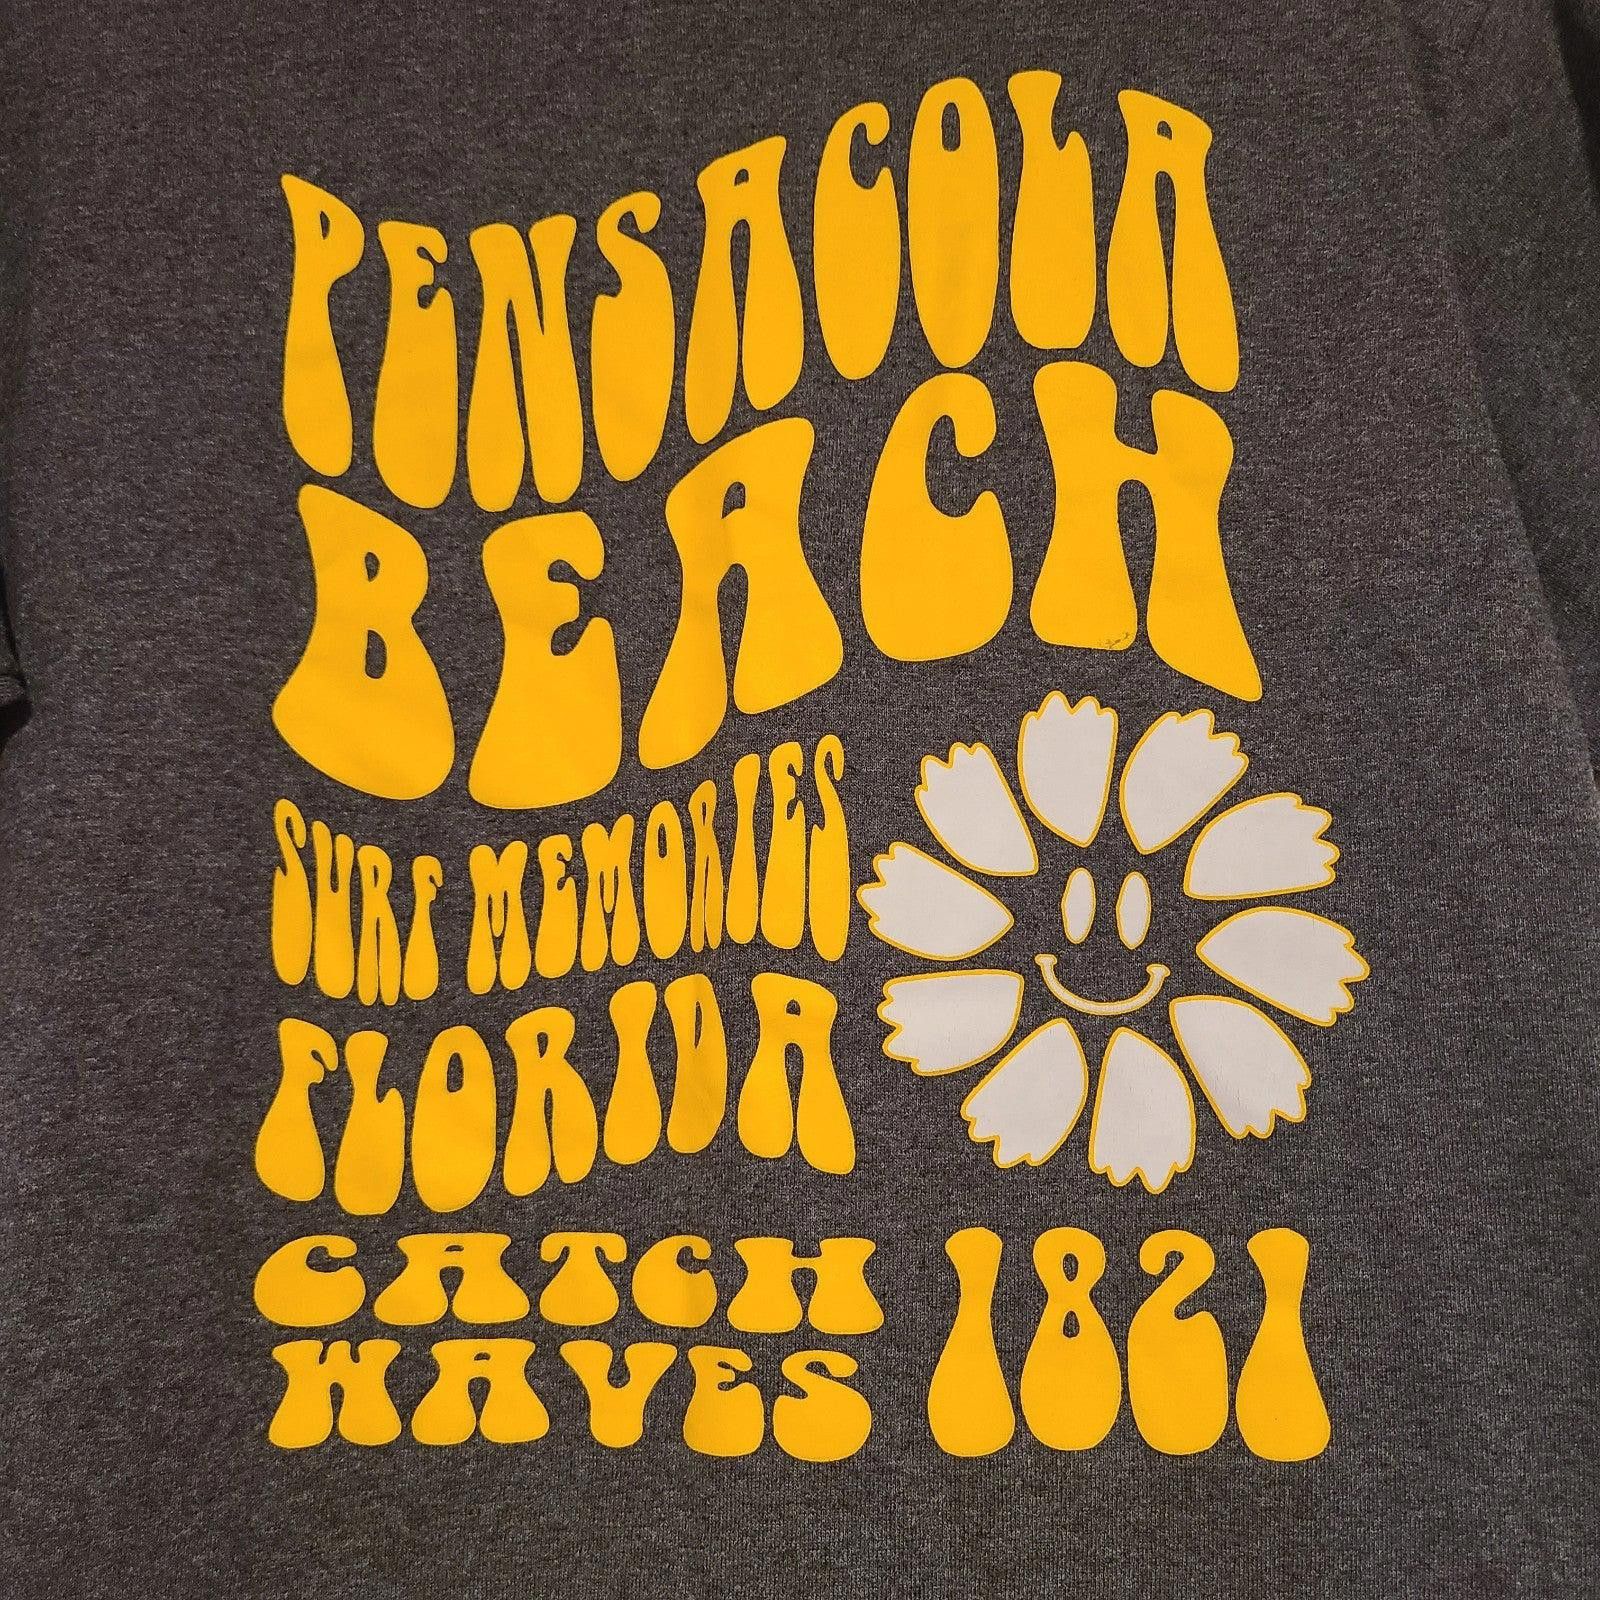 Delta Pensacola Beach Florida Surf Memories Catch Waves Shirt L Size US M / EU 48-50 / 2 - 1 Preview